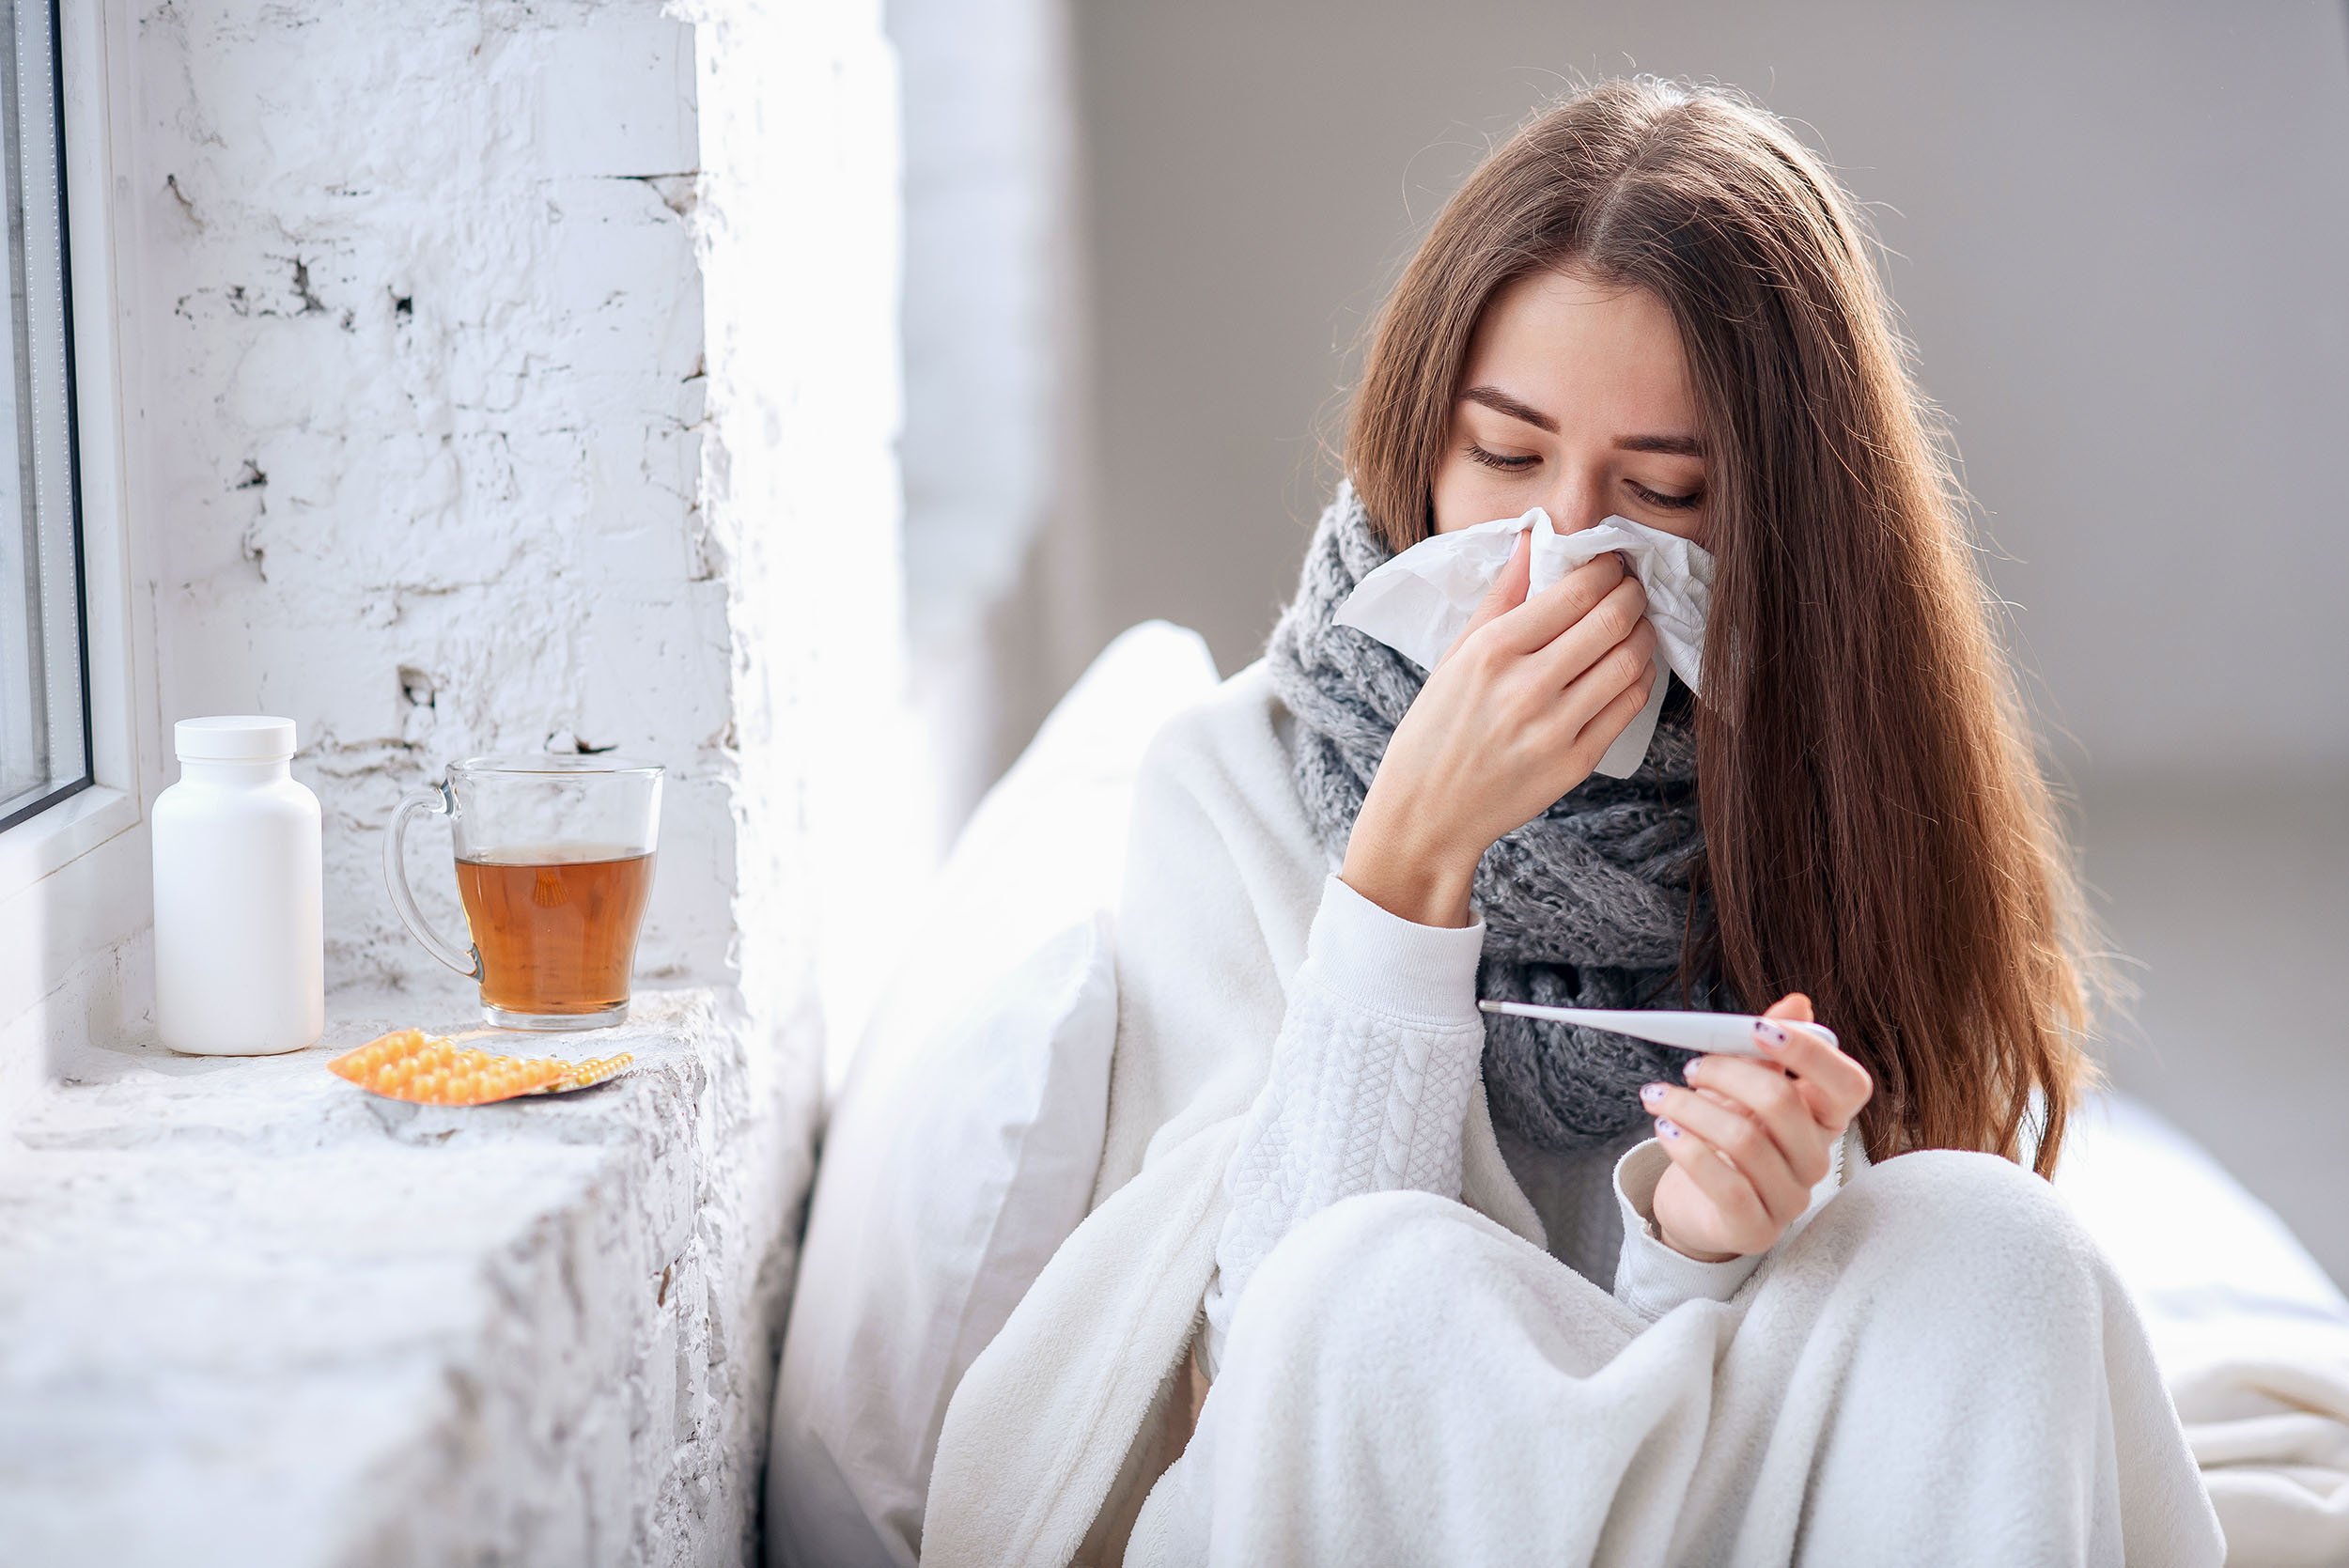  De 14 ori mai multe cazuri de gripă decât în aceeași perioadă a anului trecut